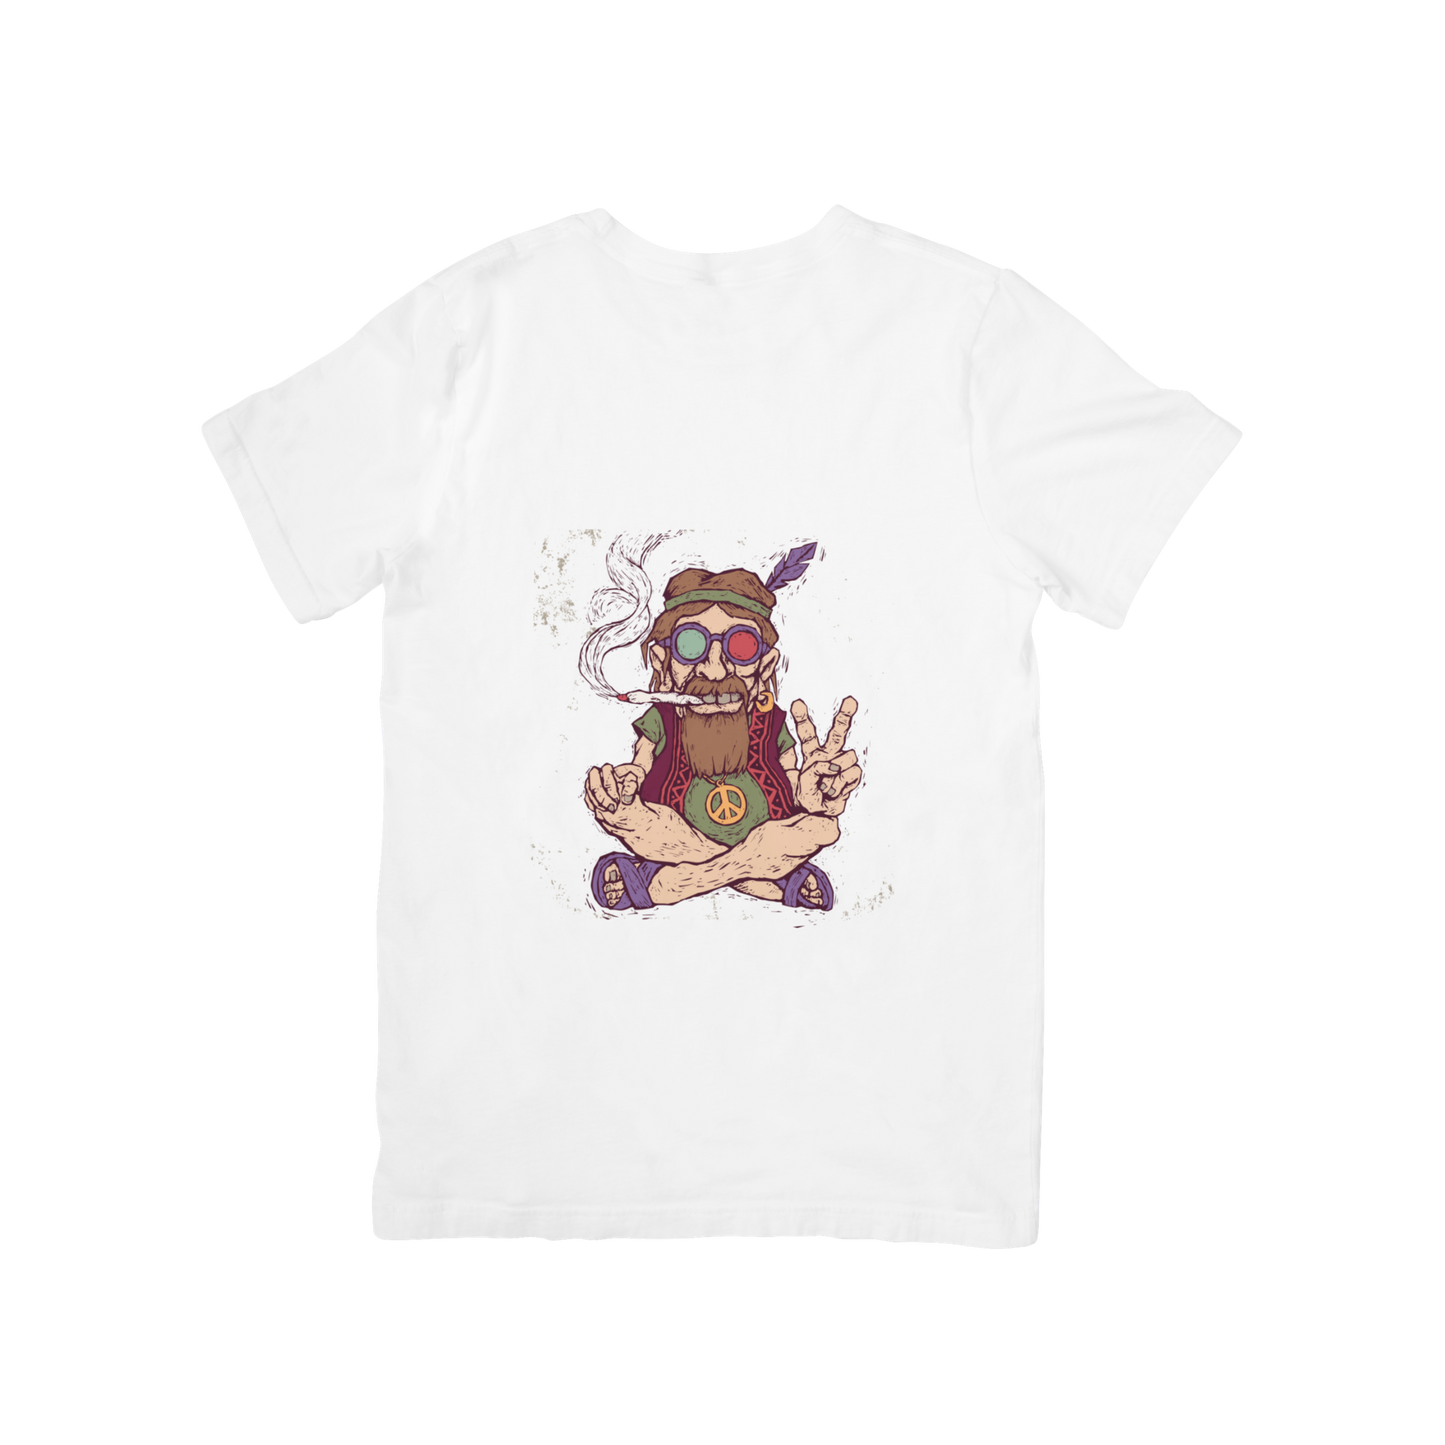 Stoner Design T-shirt